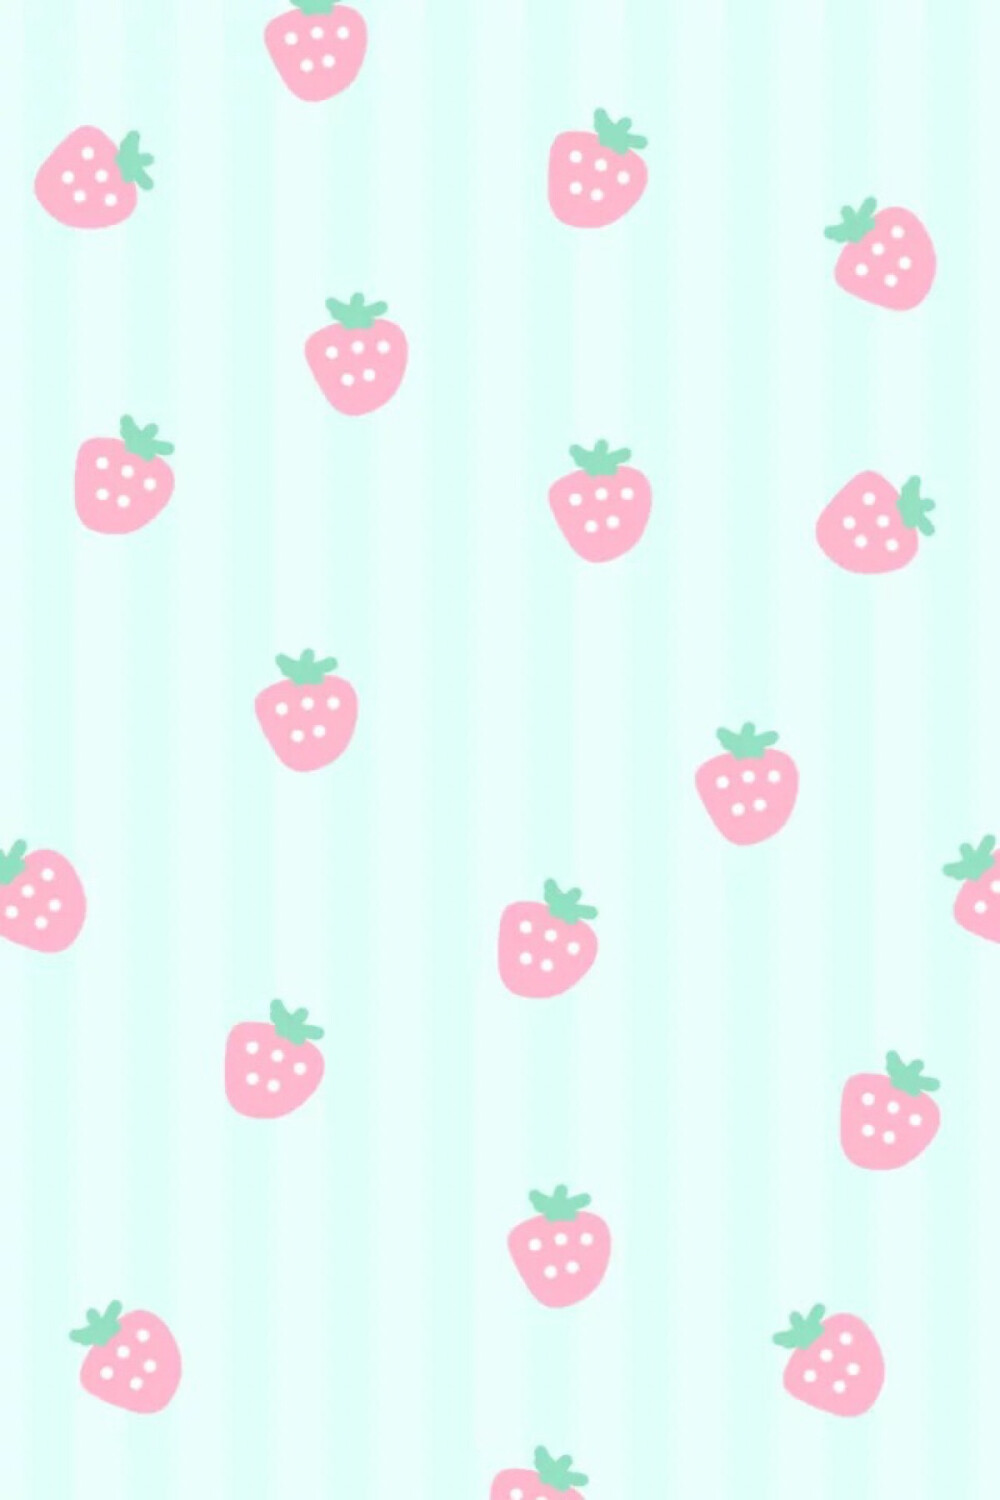 壁纸 平铺 素材 草莓